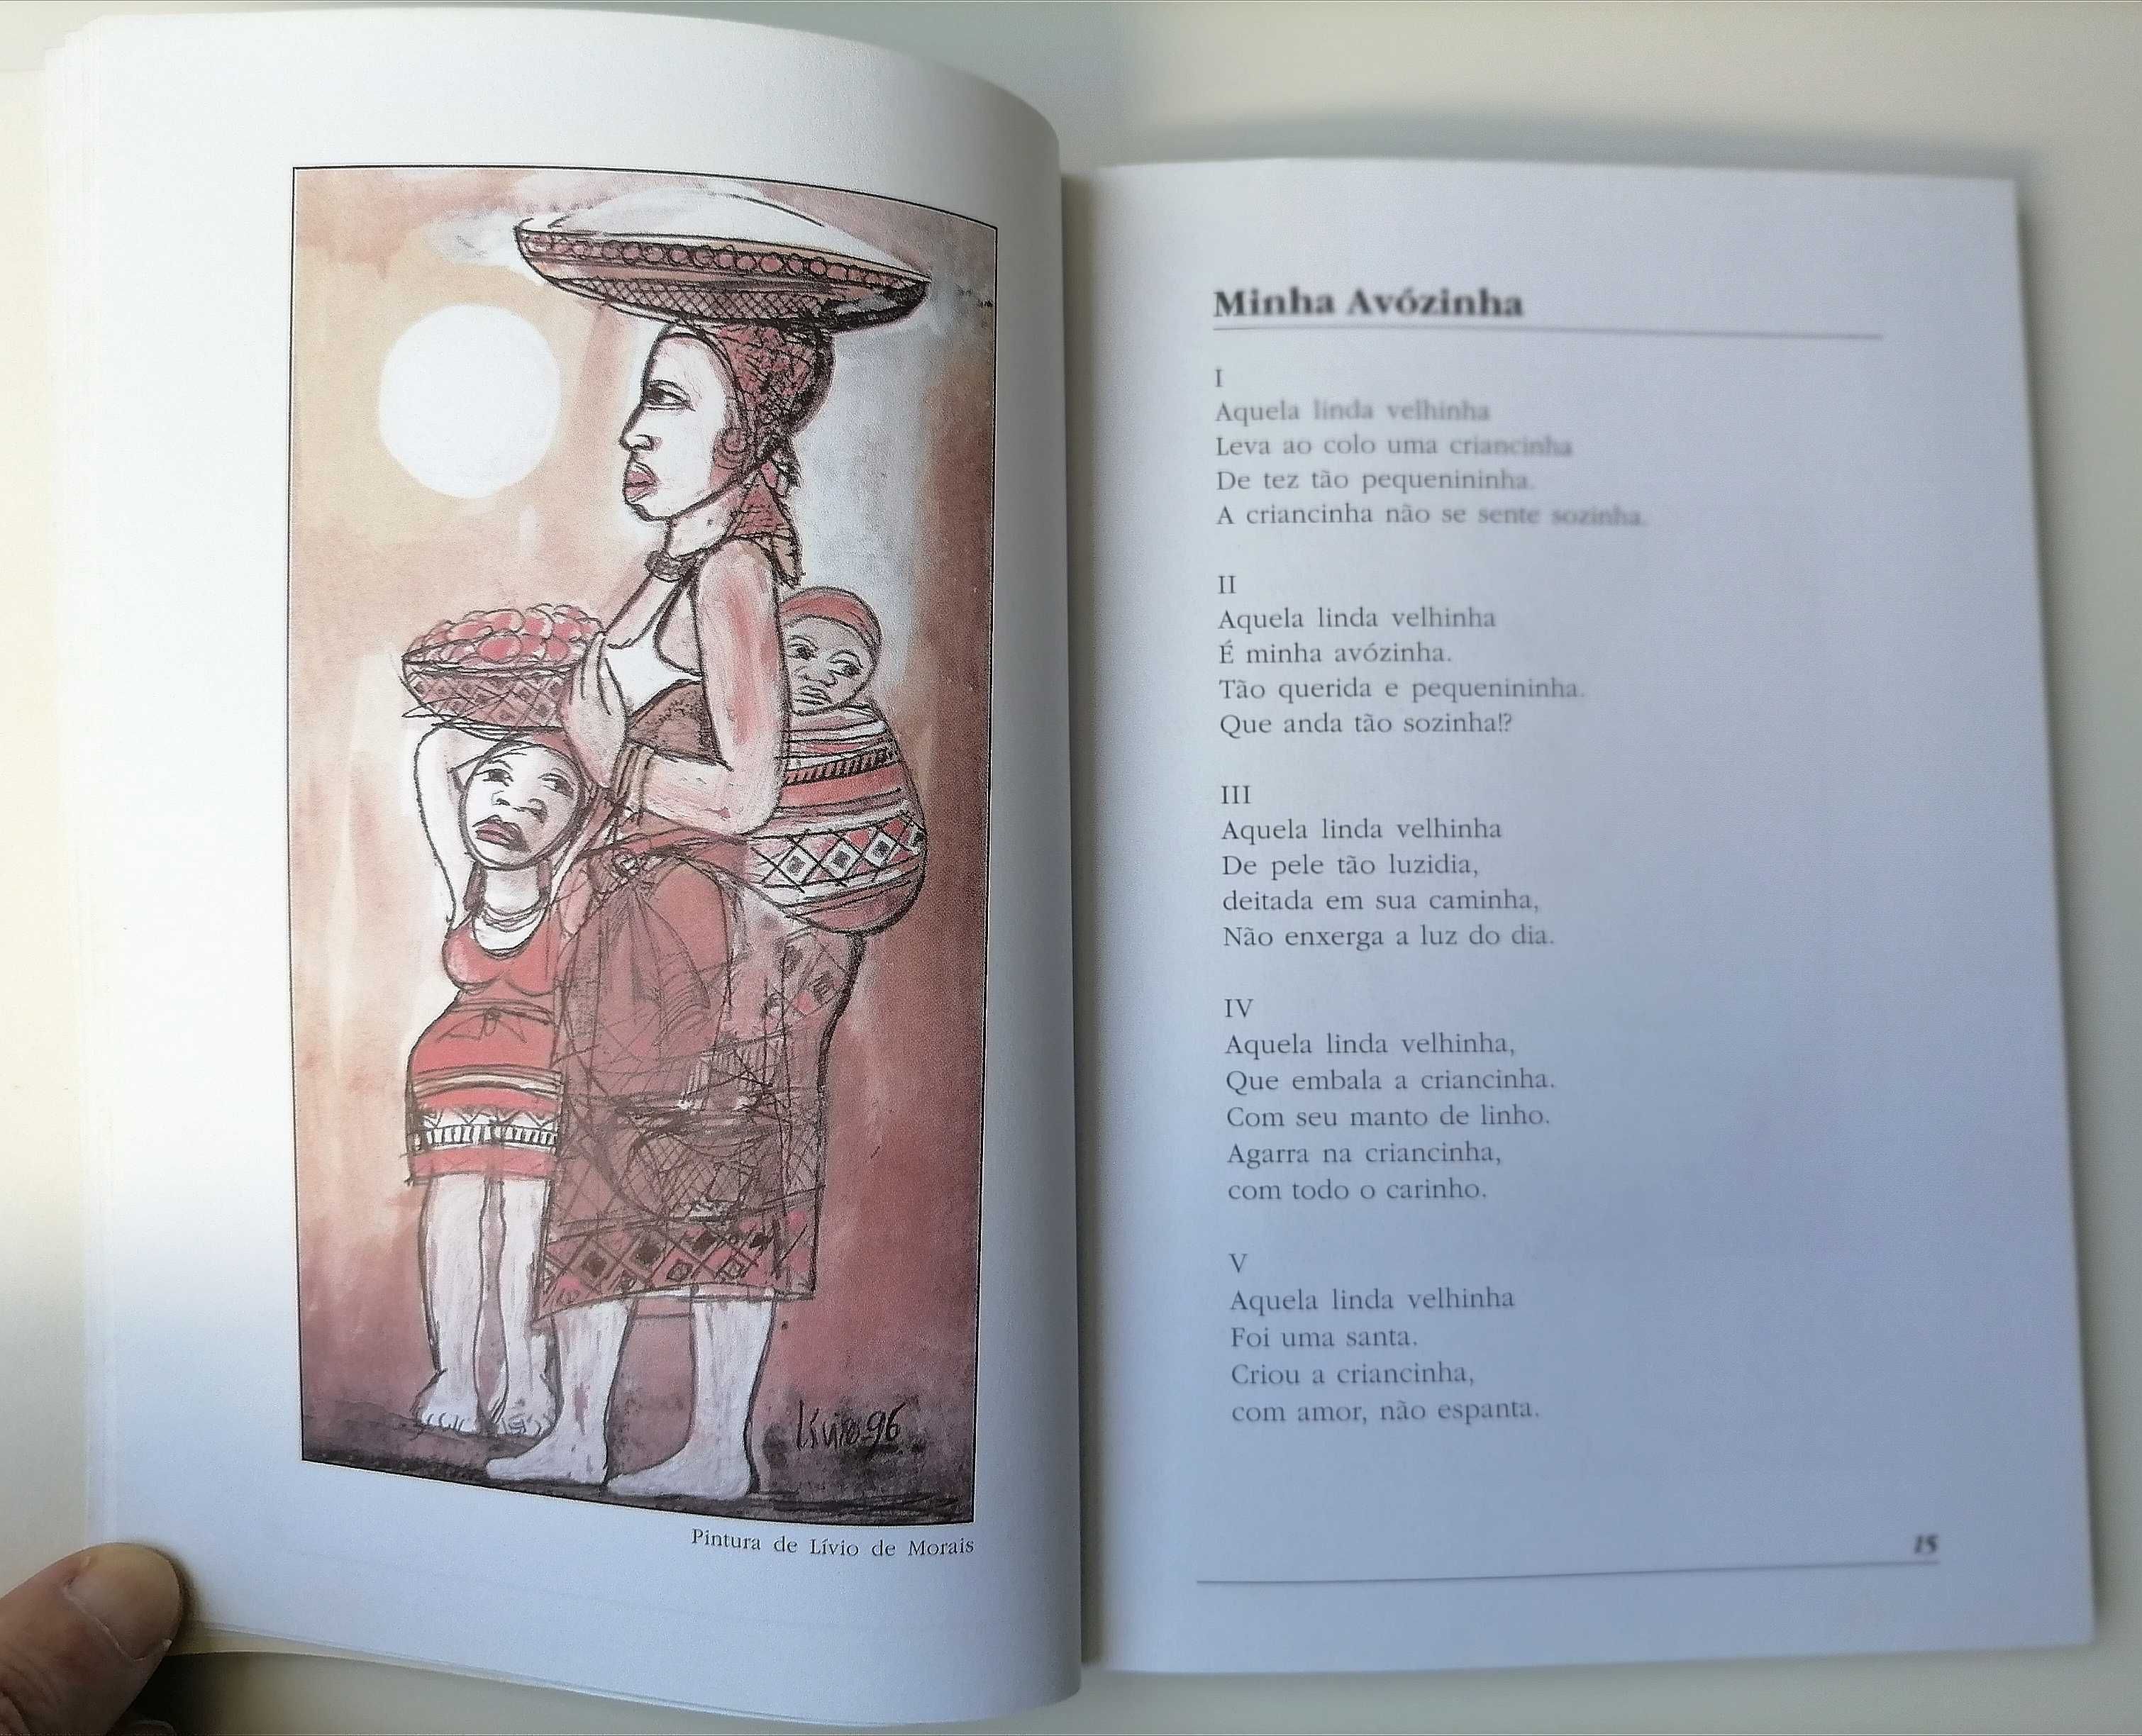 Livro de Renato Antonio da Graça "A minha avozinha"